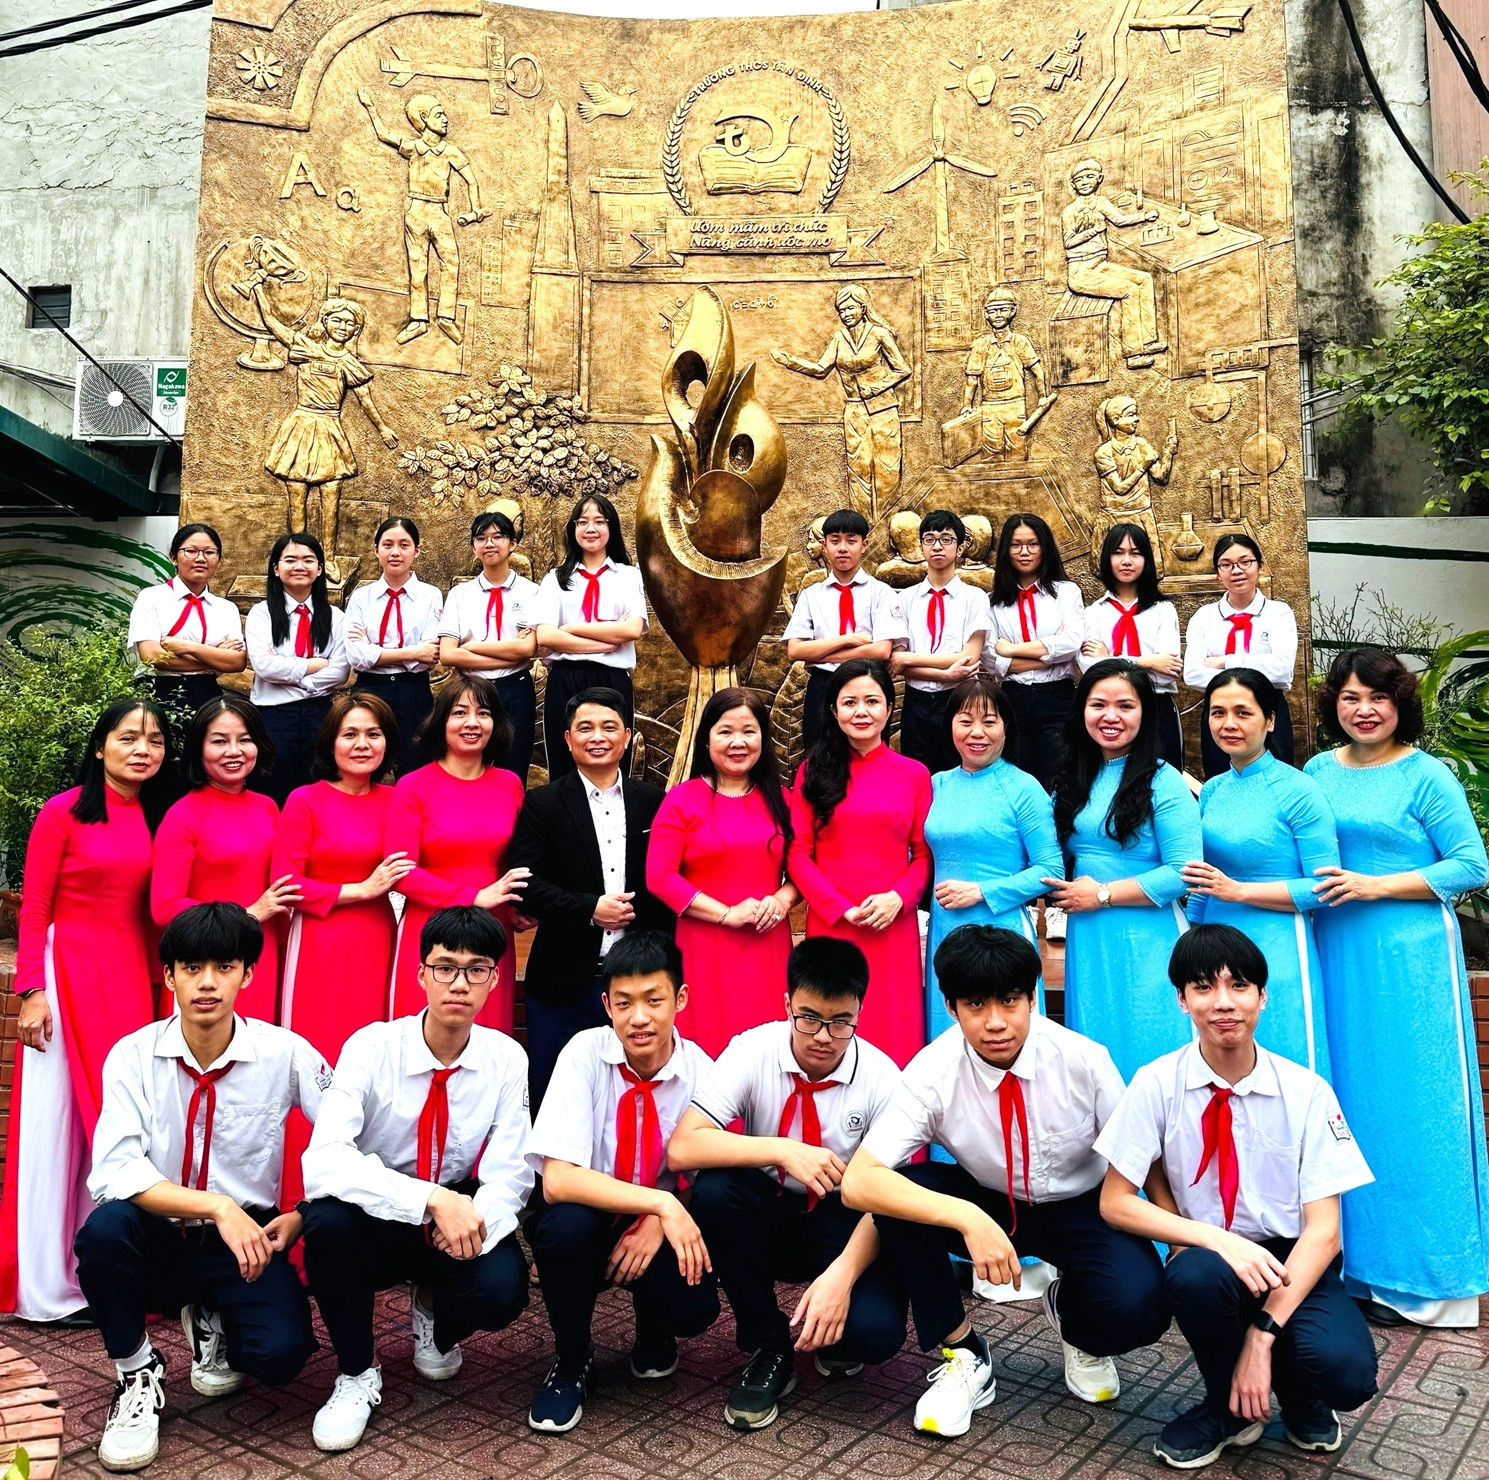 Tự hào trường làng' ở Hà Nội có có đến 44 lượt học sinh đỗ vào lớp 10 trường chuyên - Ảnh 2